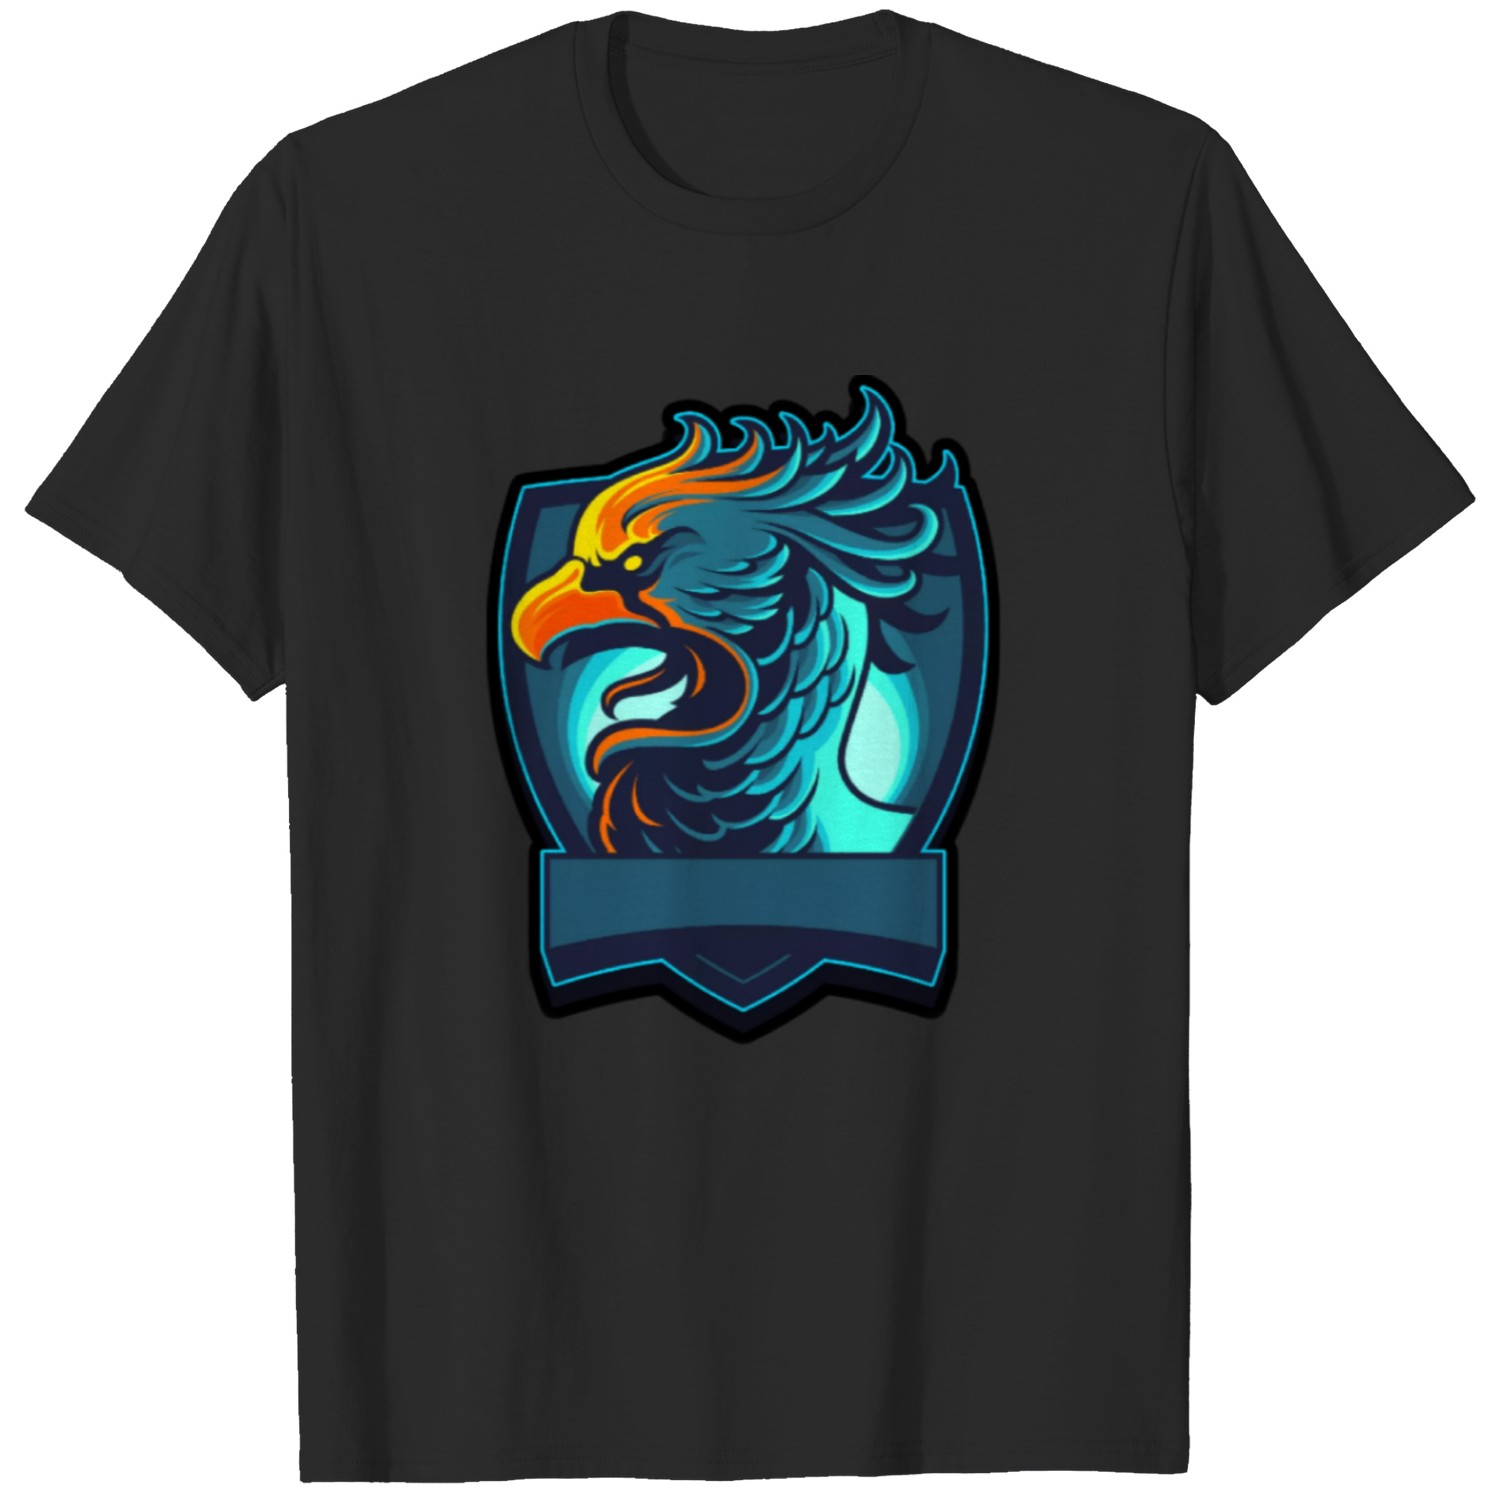 Eagle scout T-shirt